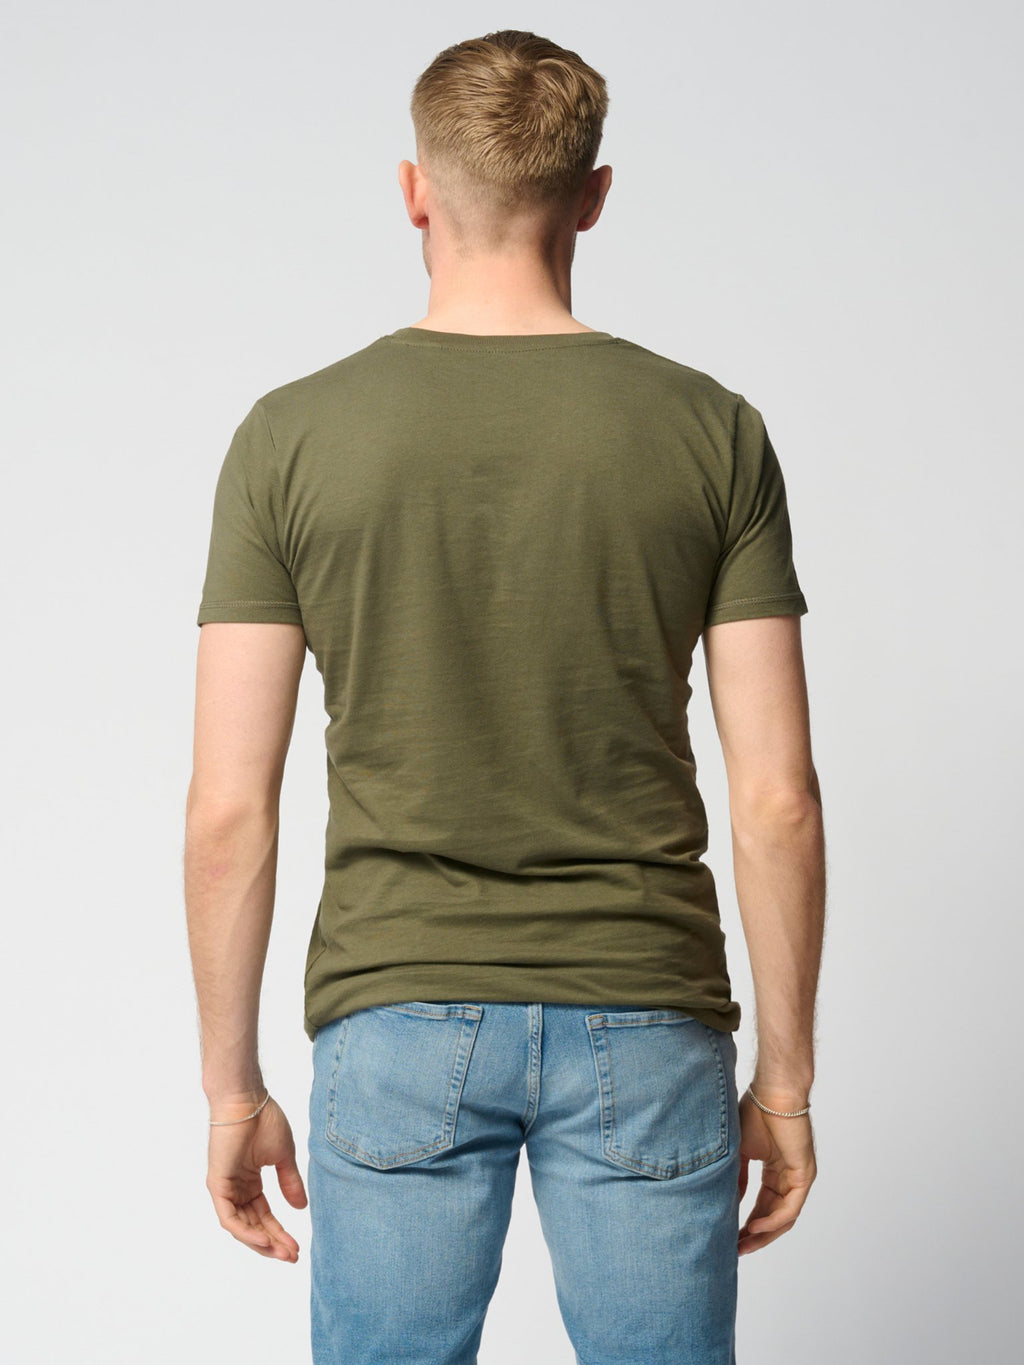 T -shirt muscolare - verde dell'esercito